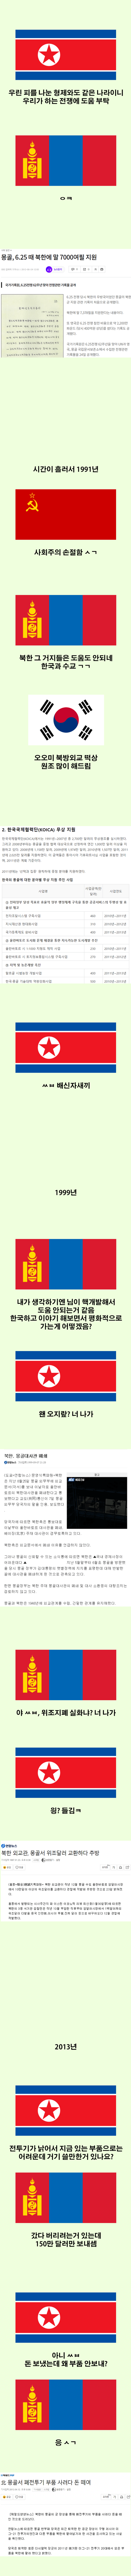 몽골-북한 (출처 - 굴락).png